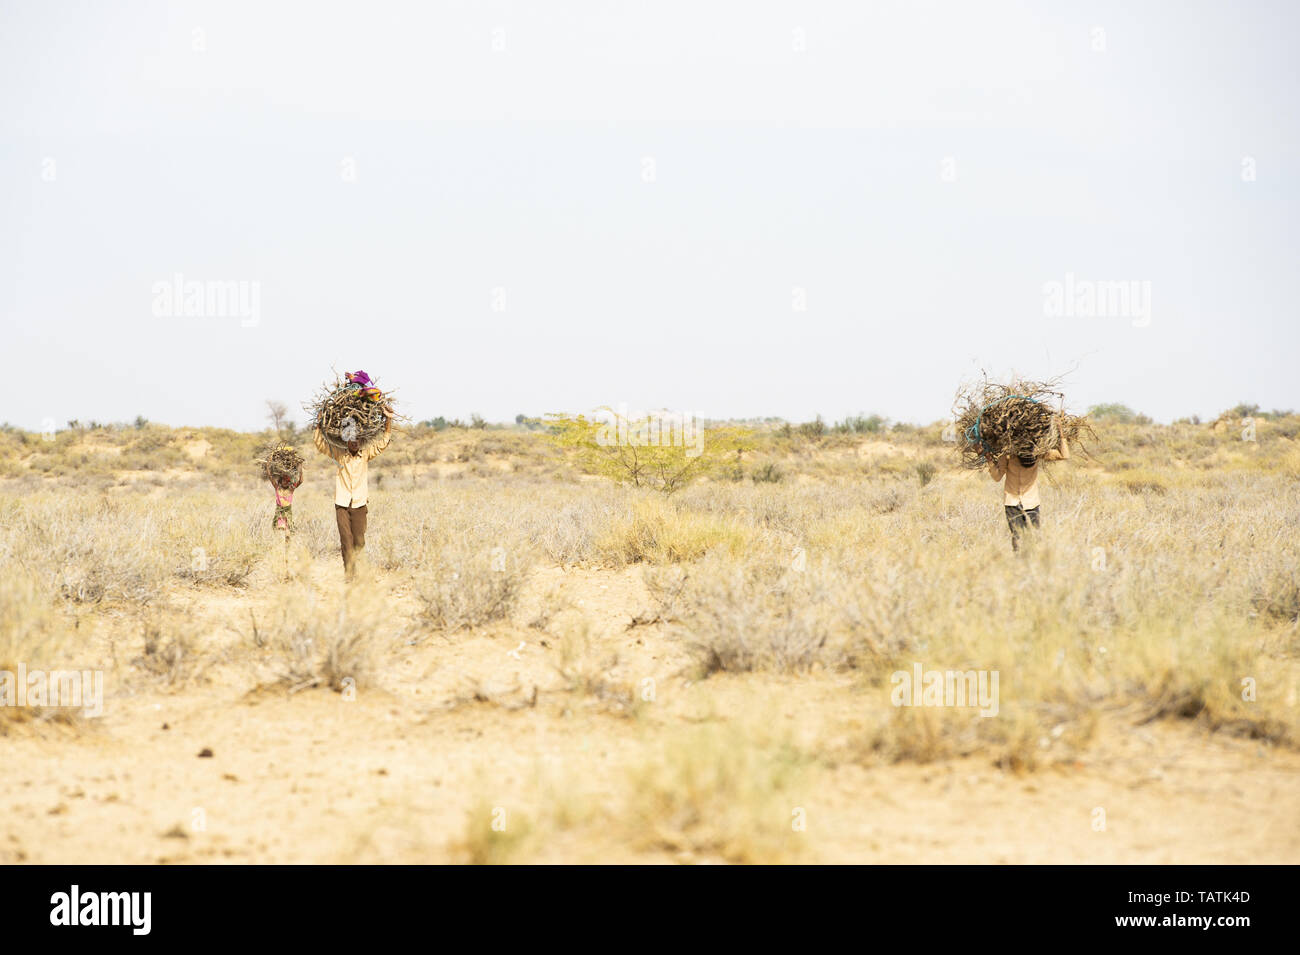 Los niños y jóvenes pobres son pesadas racimos de madera seca sobre sus cabezas en el medio del desierto de Thar, Jaisalmer, Rajasthan, India. Foto de stock